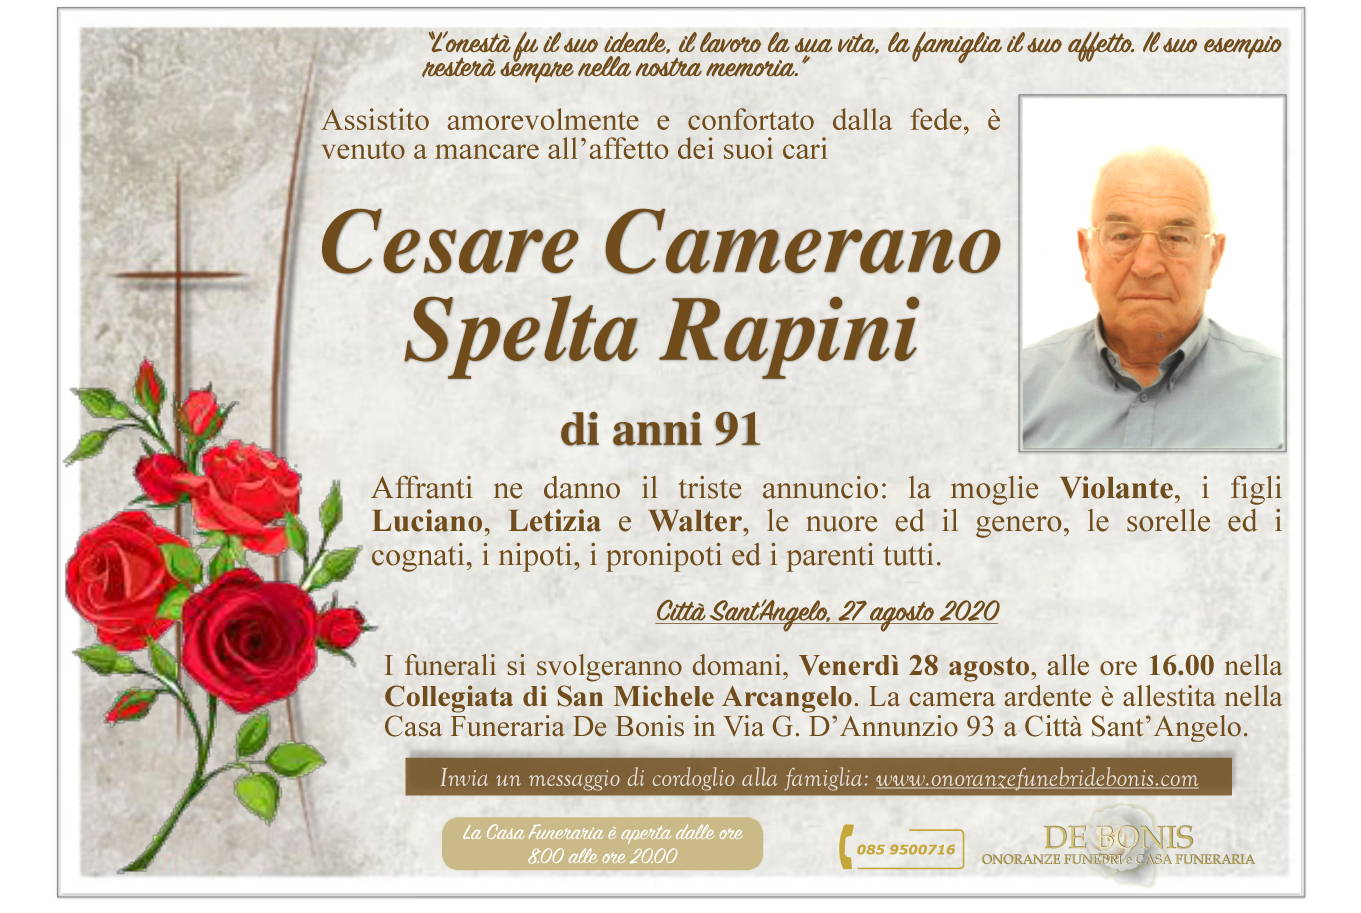 Cesare Camerano Spelta Rapini